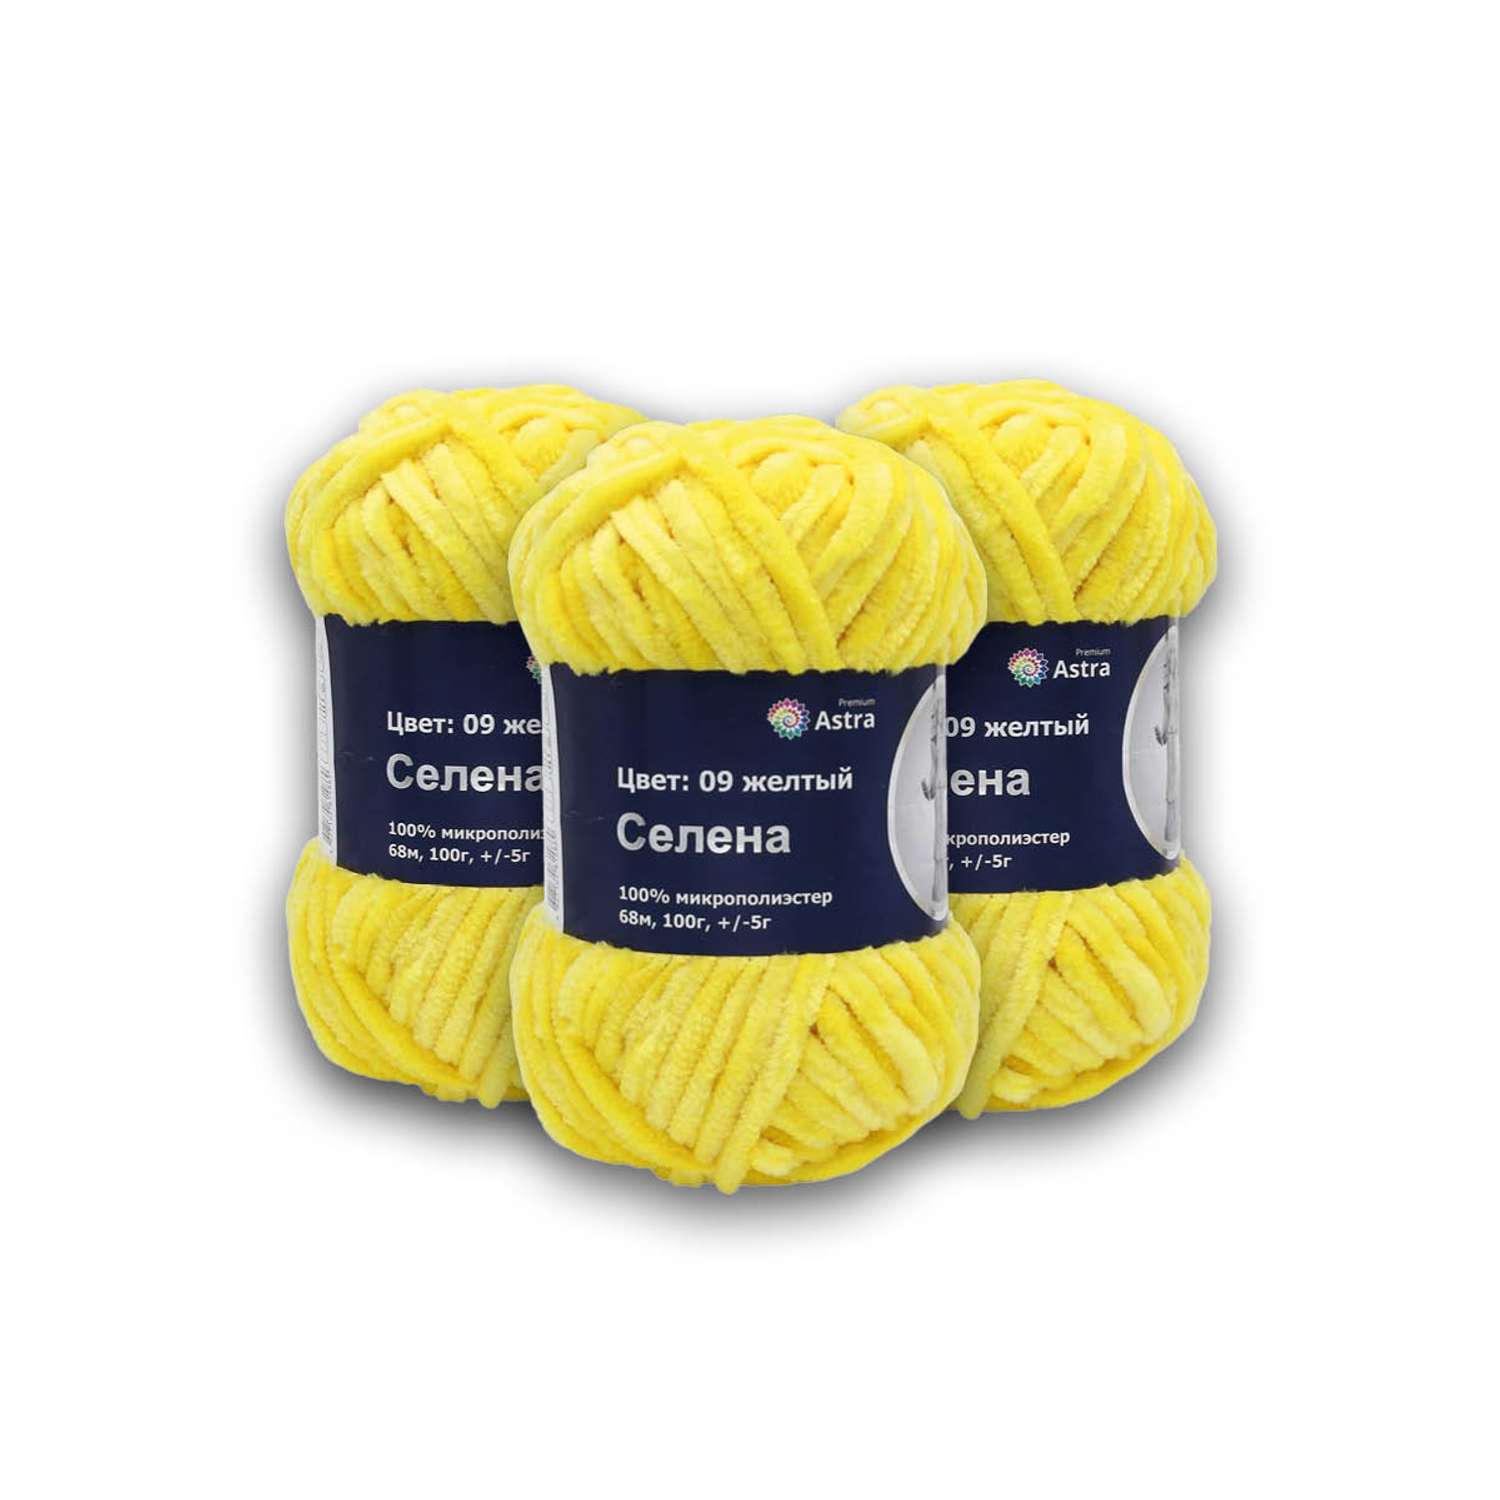 Пряжа для вязания Astra Premium селена мягкая микрополиэстер 100 гр 68 м 09 желтый 3 мотка - фото 2